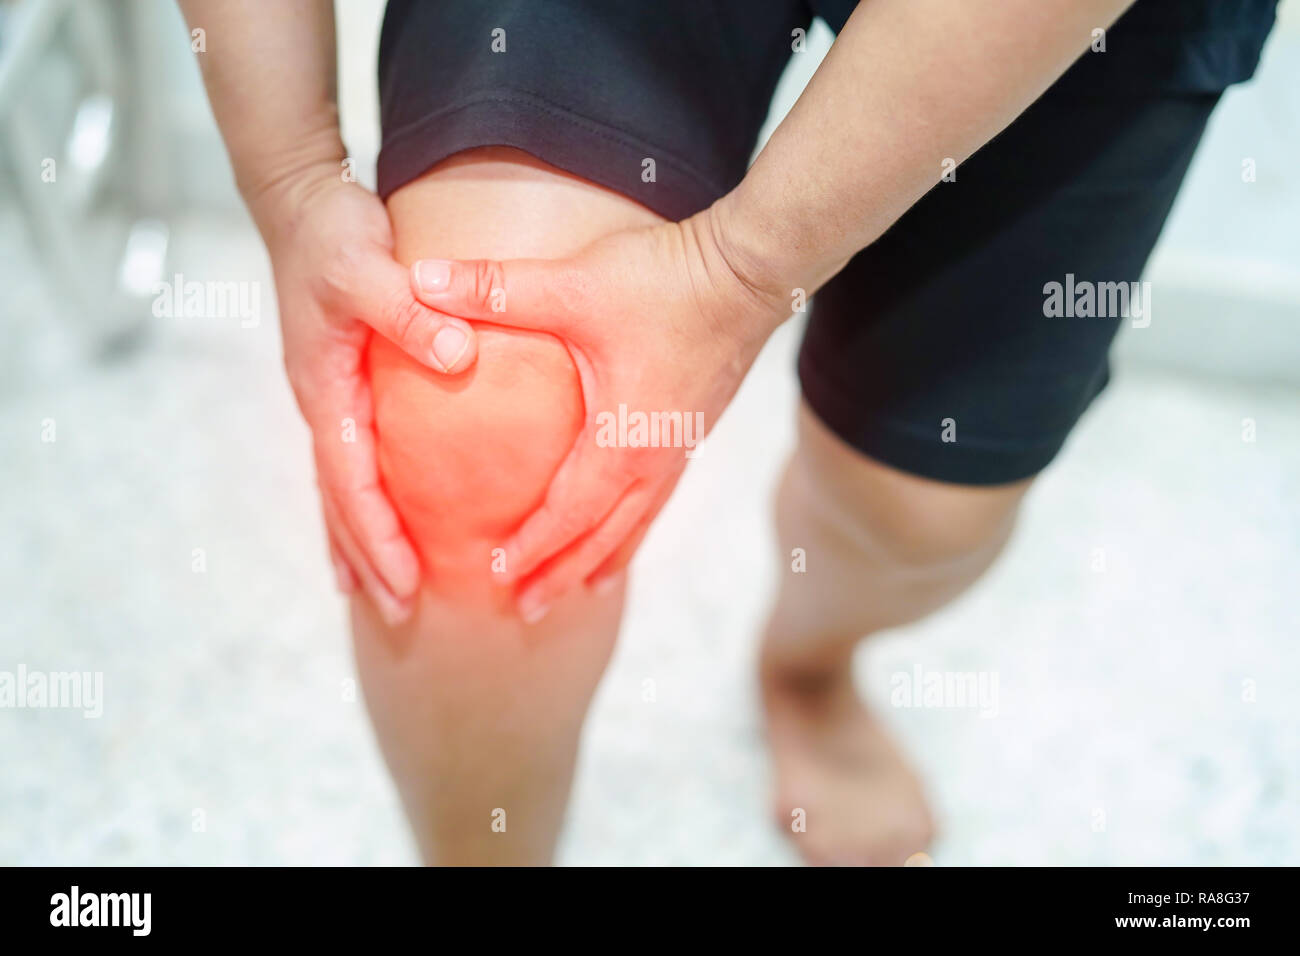 Dame asiatique femme d'âge moyen patient toucher et sentir la douleur son genou : concept médical en bonne santé. Banque D'Images